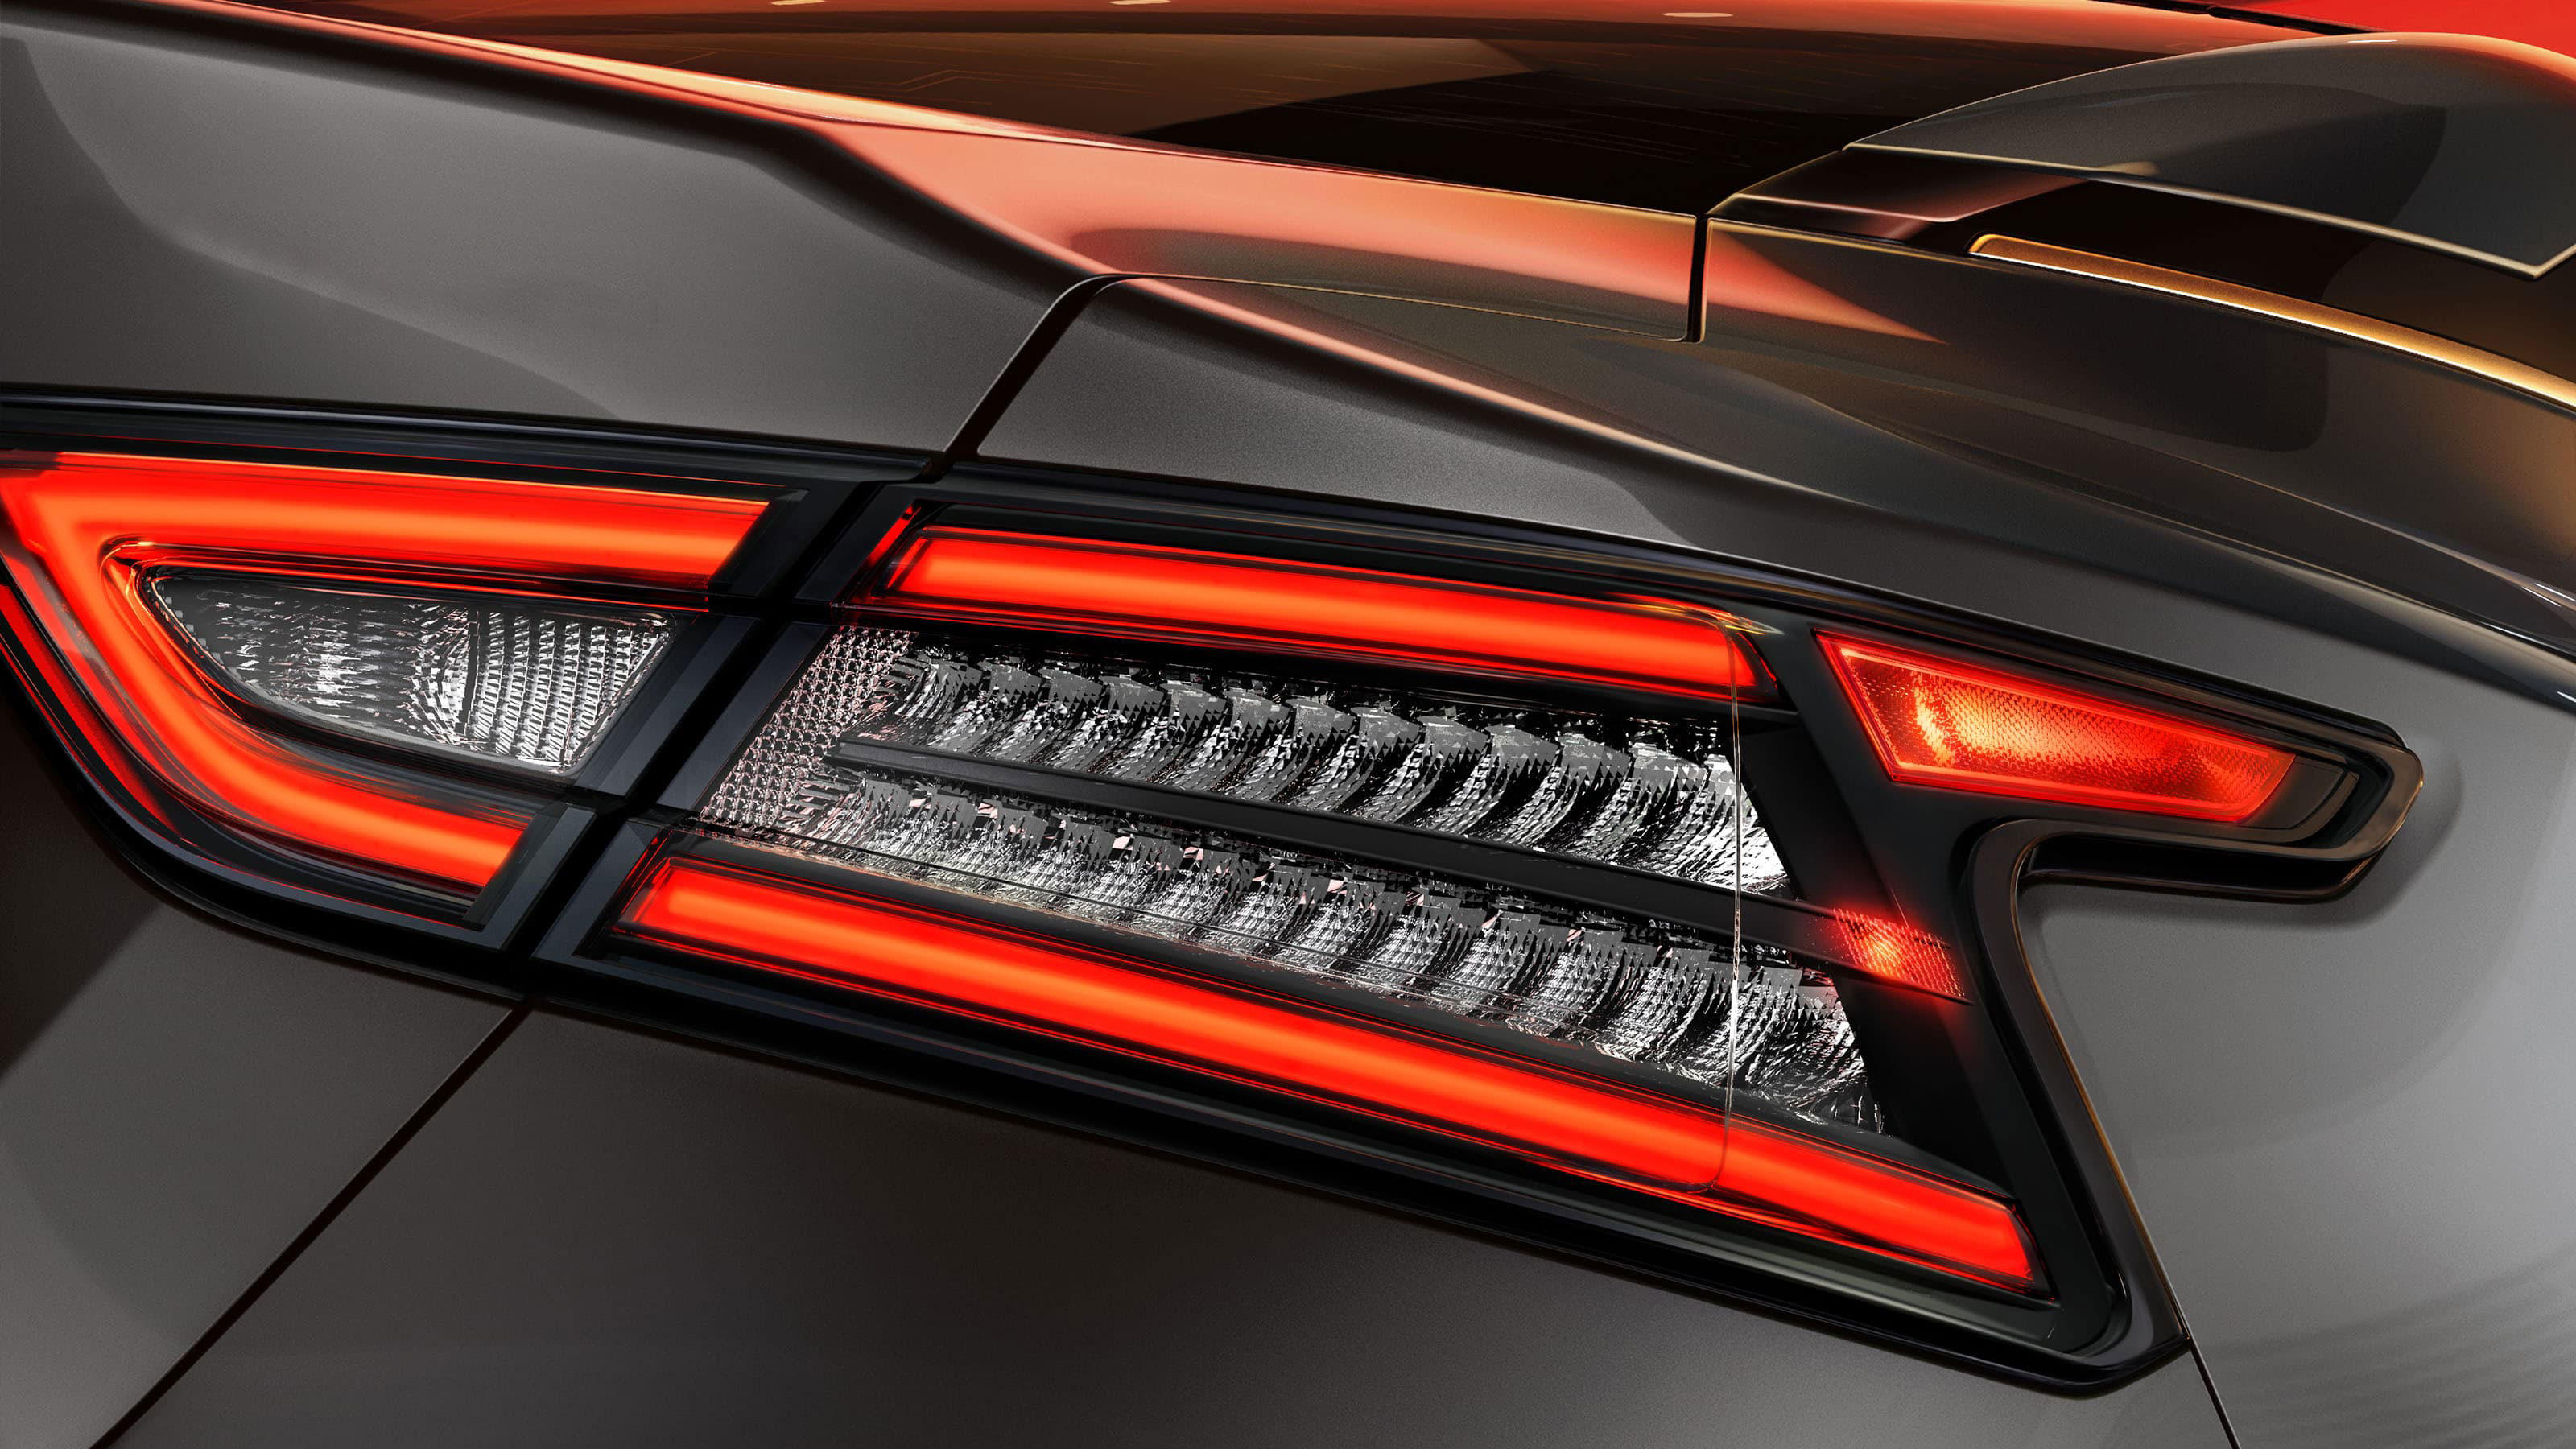 Nissan Maxima LED signature taillight